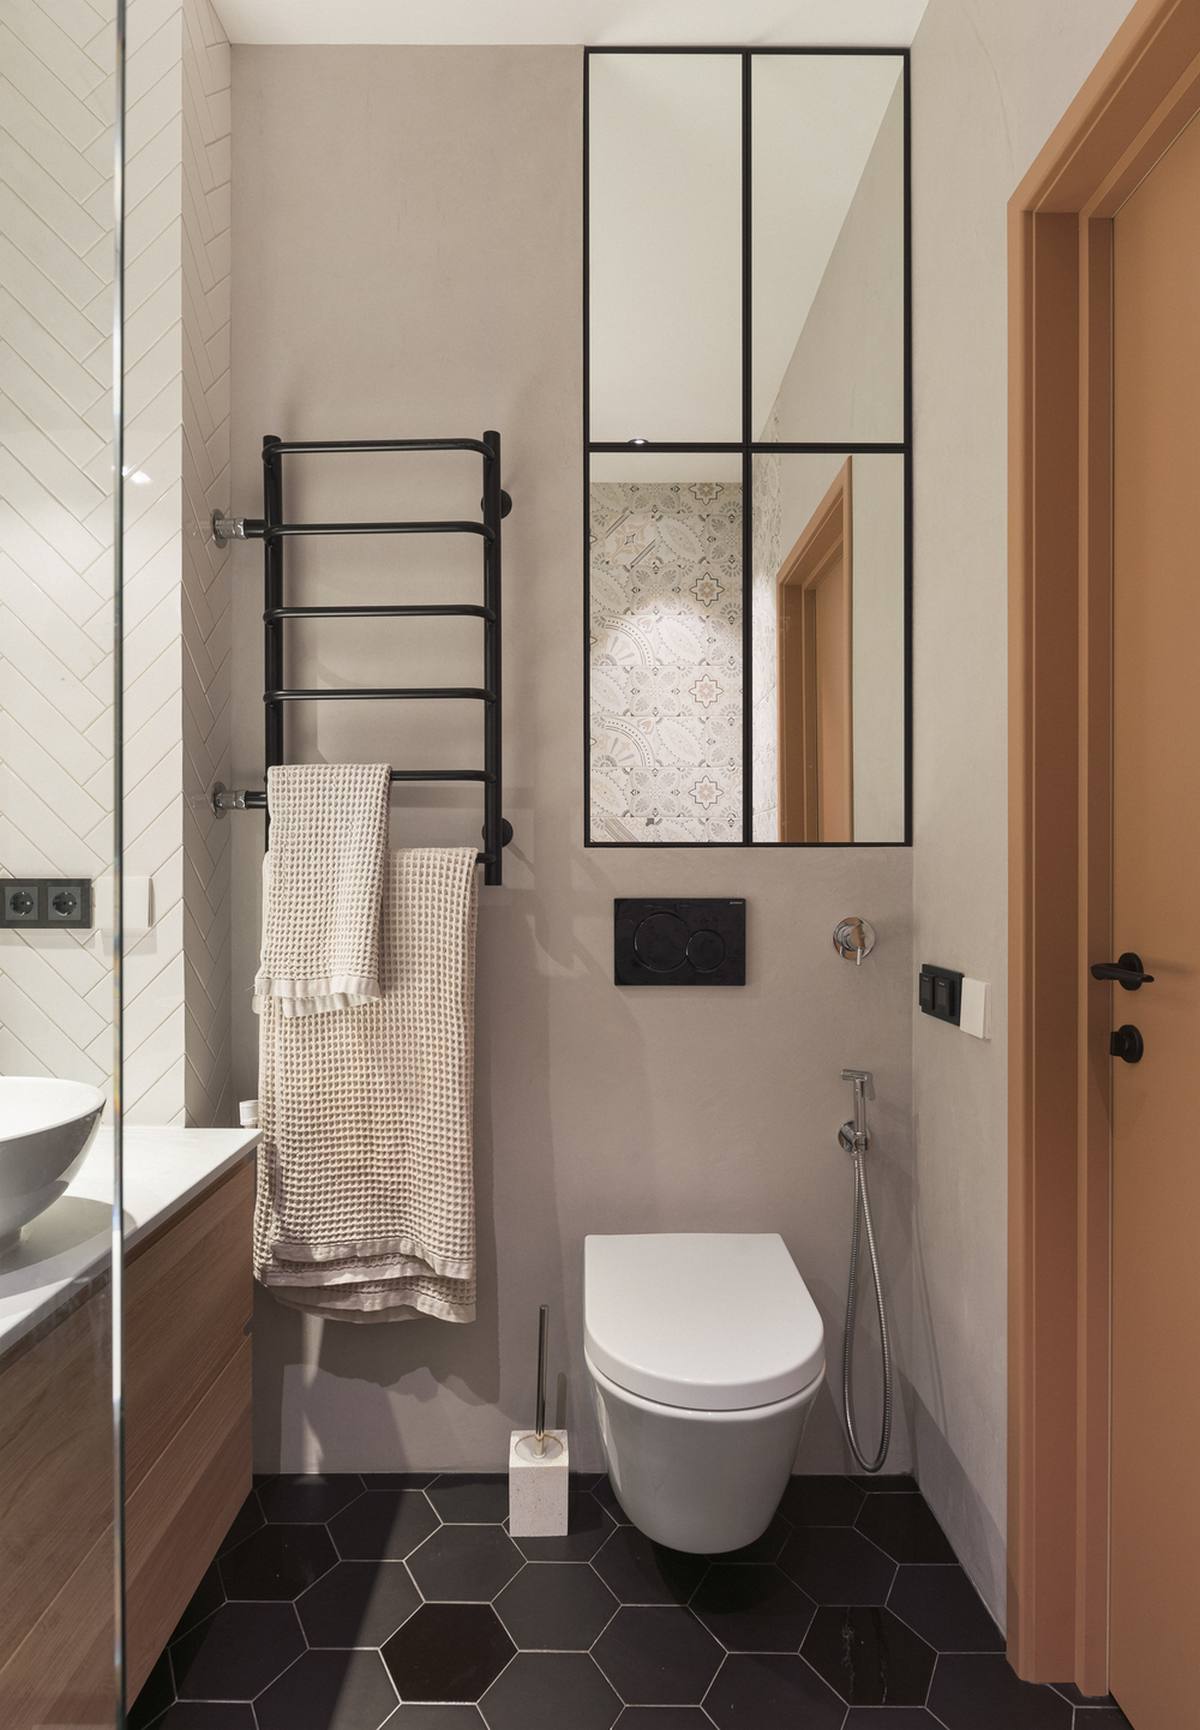 Phòng tắm nhỏ hẹp nên sử dụng bồn toilet treo tường để giải phóng diện tích sàn. Sàn nhà lát gạch tổ ong tối màu dễ dàng vệ sinh sạch sẽ. Chiếc tủ lưu trữ trên cao có bề mặt cửa ốp gương giúp 'cơi nới' không gian.